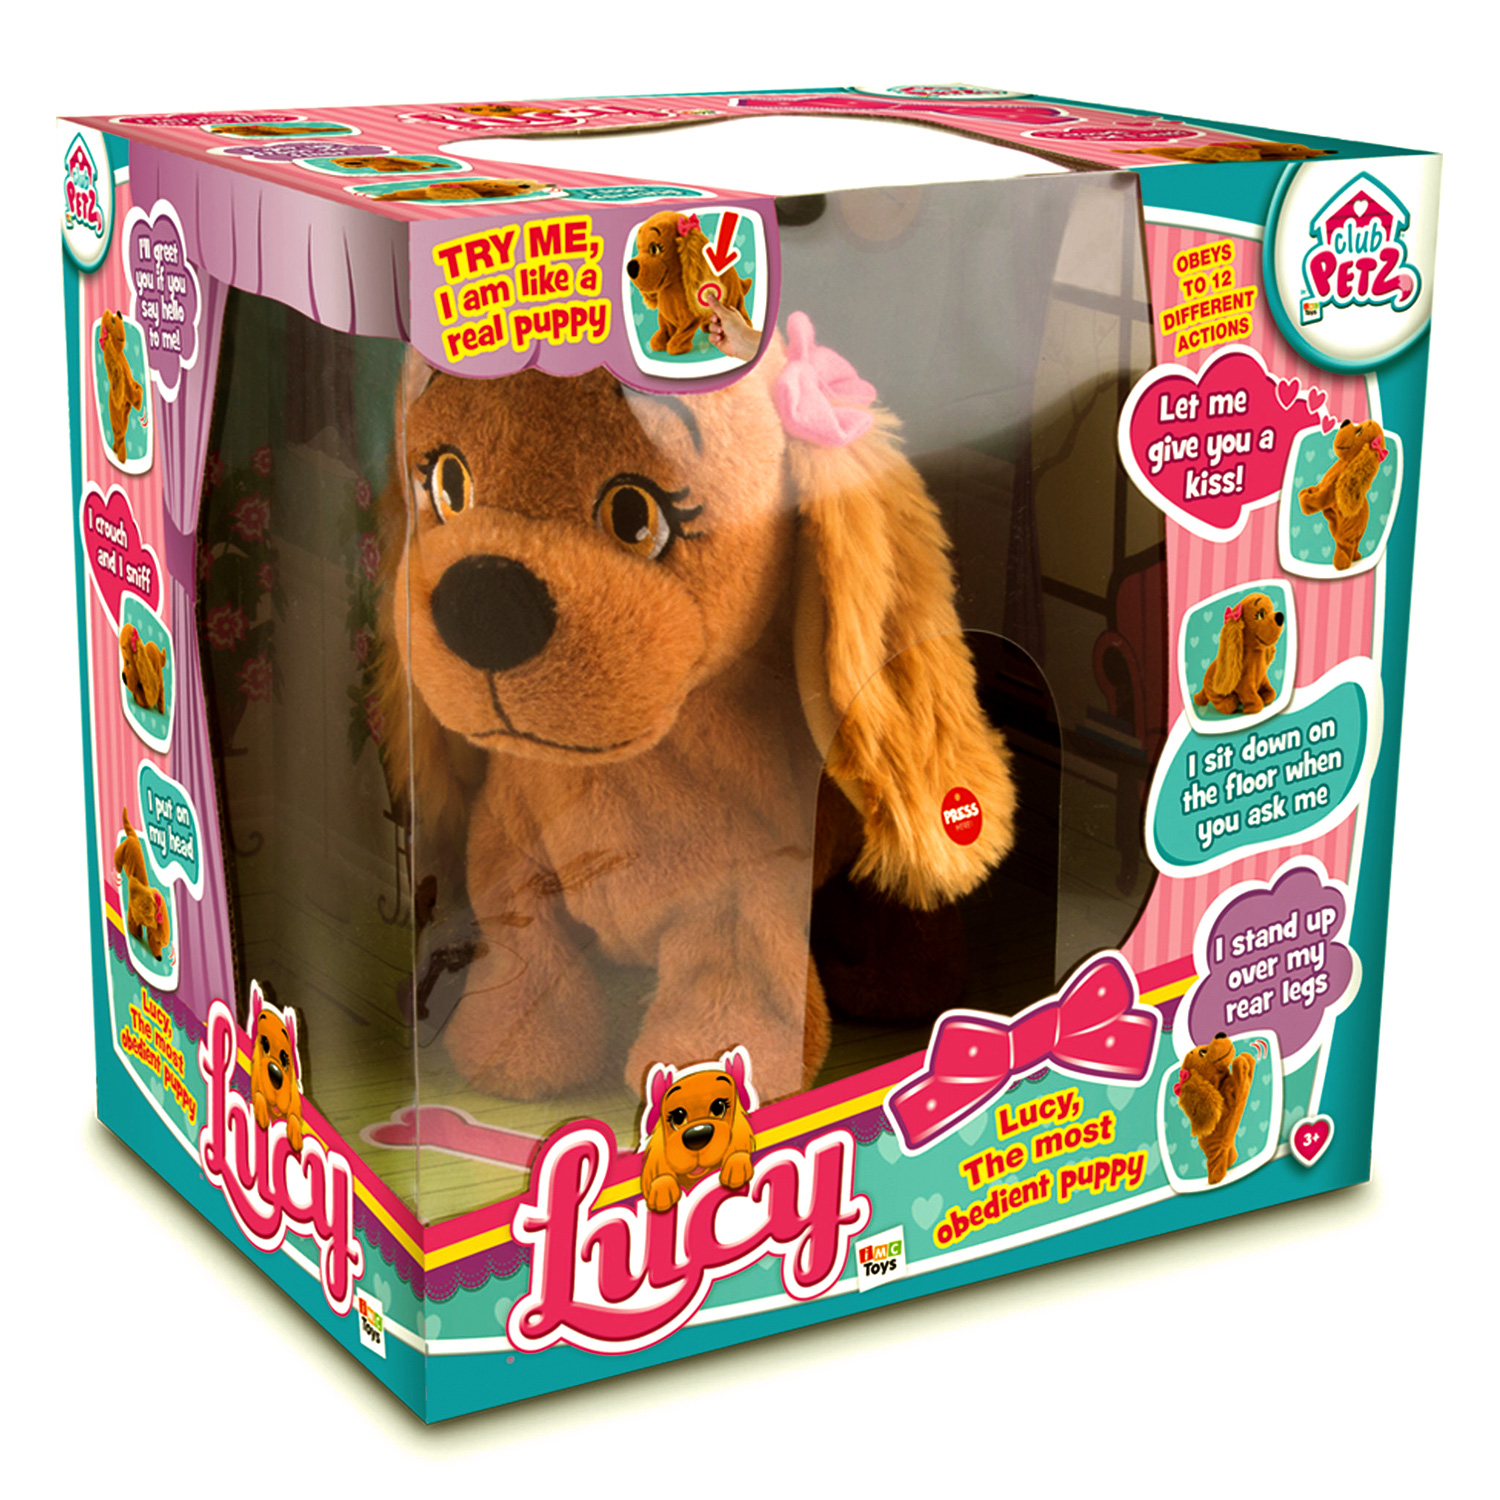 Imc toys. Интерактивная мягкая игрушка IMC Toys собака Lucy. Интерактивная собака IMC Toys собака Lucy. Игрушка интерактивная IMC Toys Club Petz собака Lola. Интерактивная мягкая игрушка IMC Toys собака Lucy Song&Dance, коричневый.